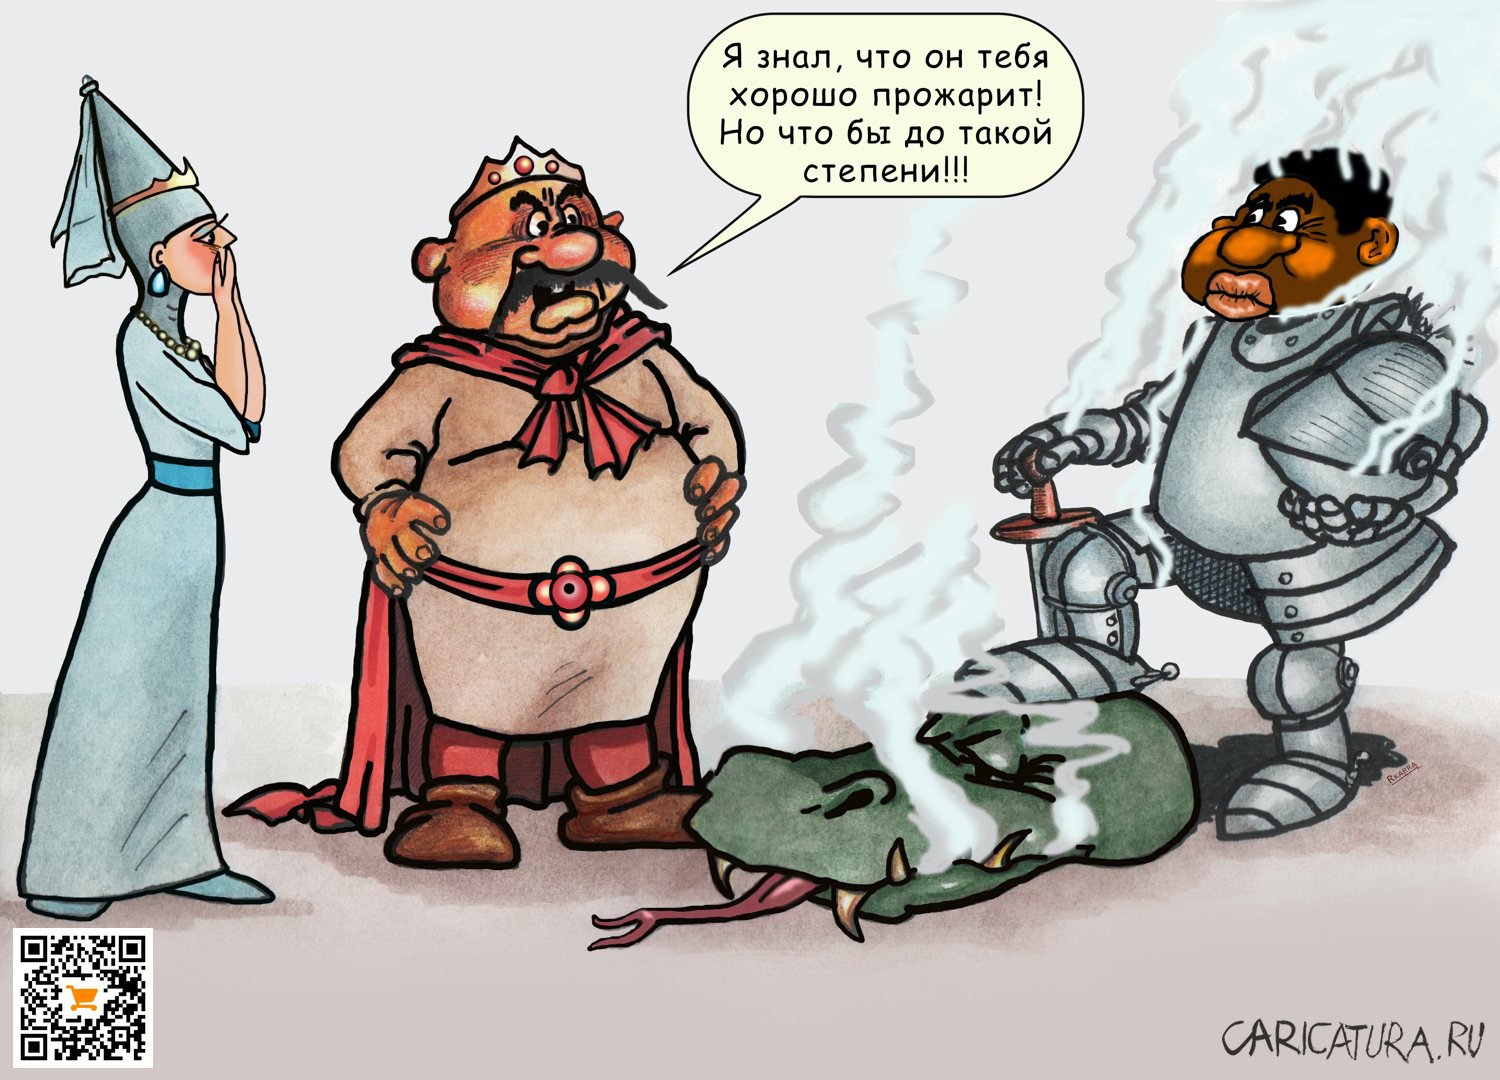 Карикатура "Прожарка "Well done"", Раф Карин